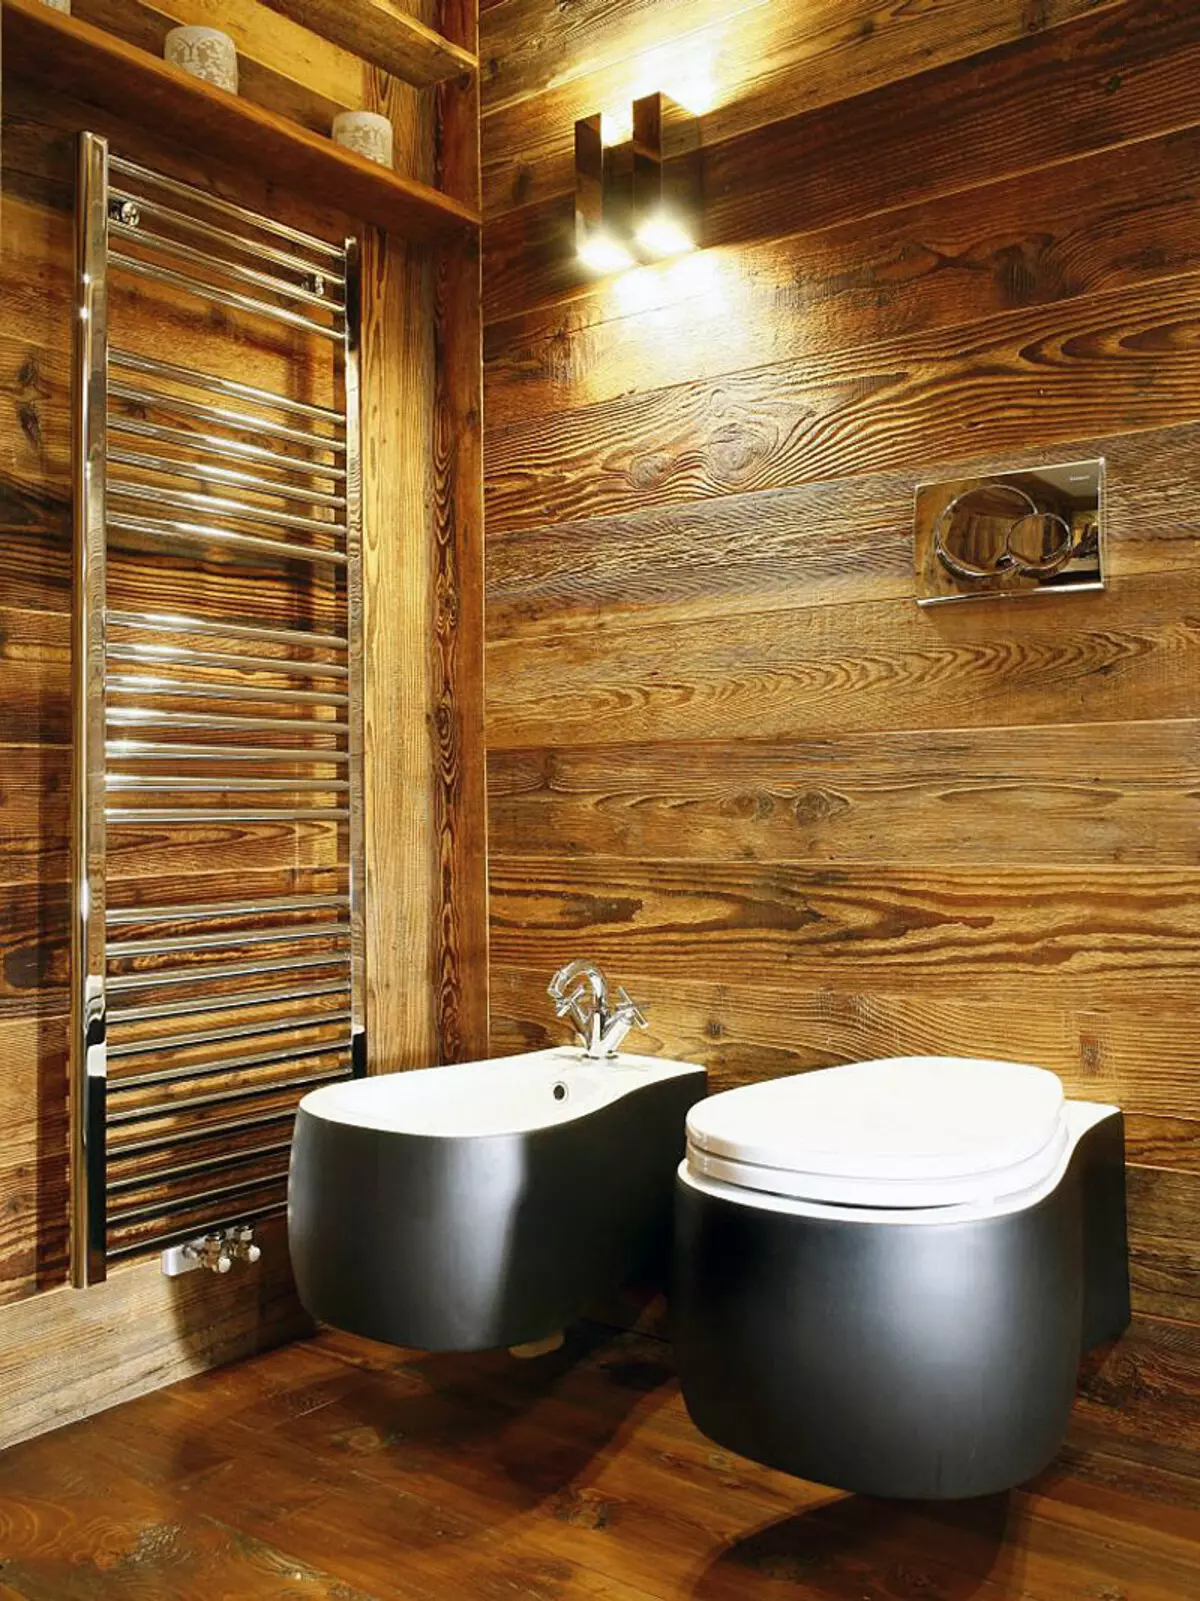 Μπάνιο σε ξύλινο σπίτι (76 φωτογραφίες): Σχεδιασμός δωματίου σε ένα σπίτι ενός μπαρ στη χώρα, παραδείγματα φινίρισμα δαπέδου, συστήματα εξαερισμού 10475_6